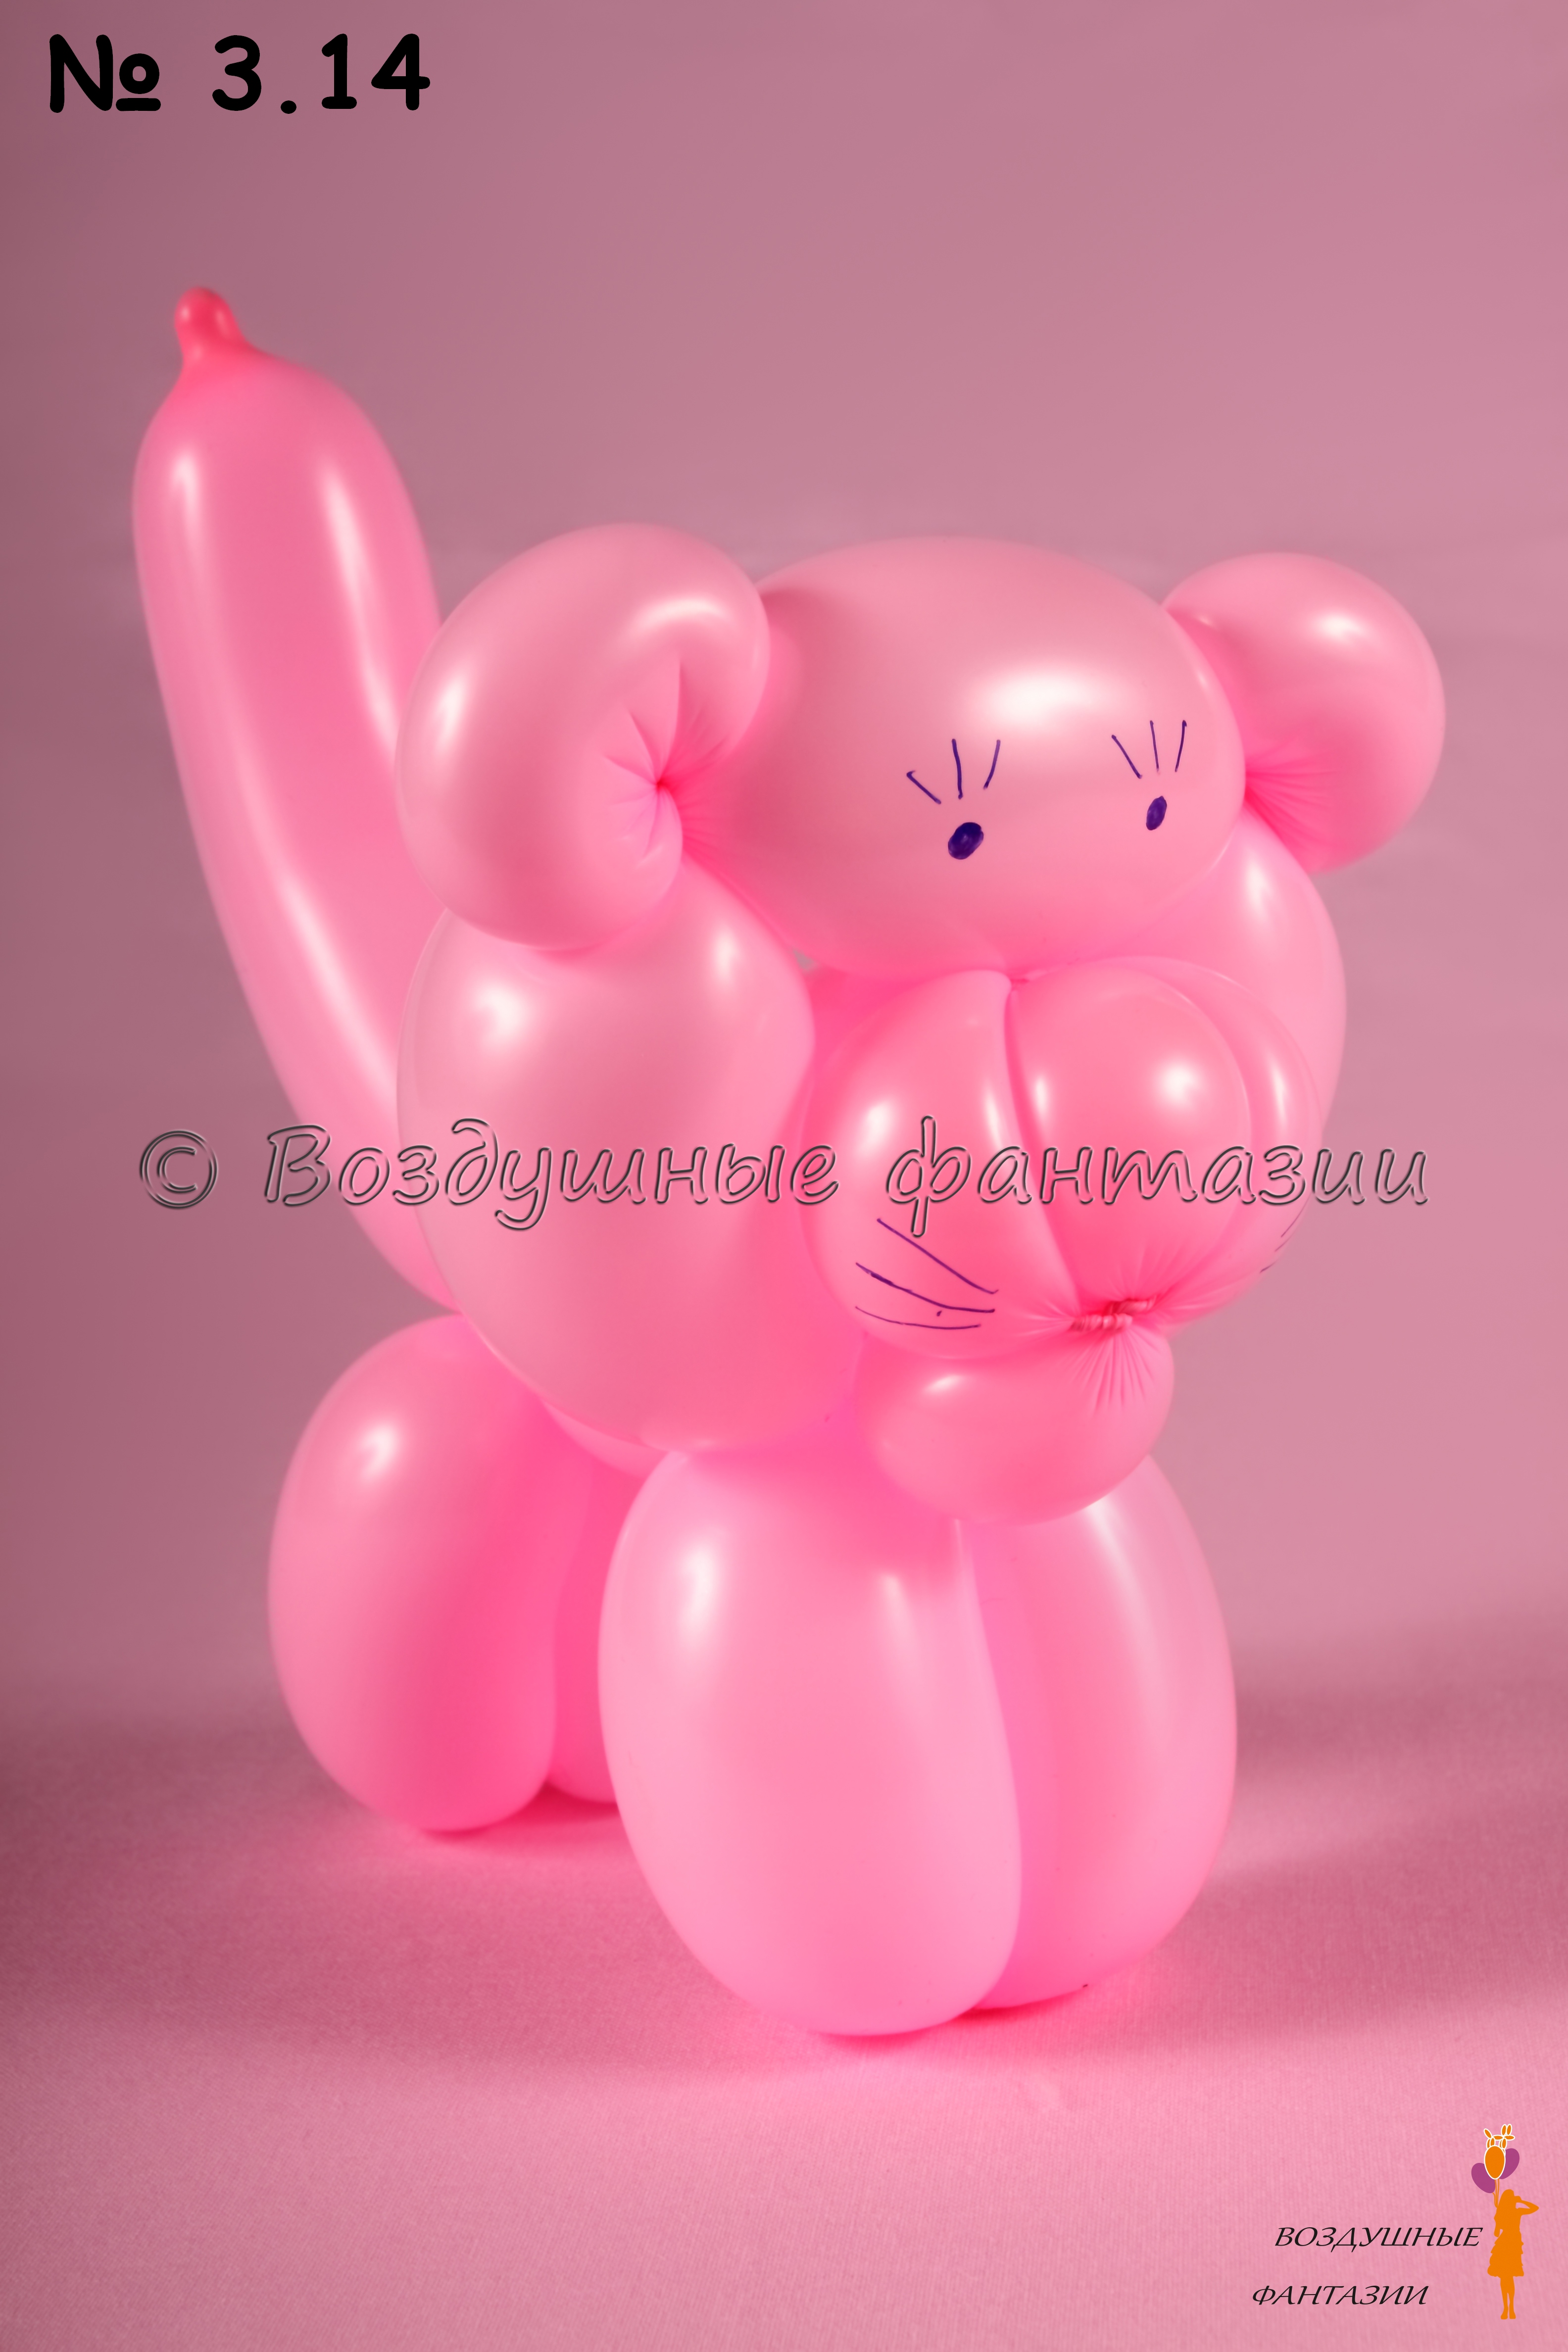 Nikki Fox балует киску новой розовой игрушкой из шариков